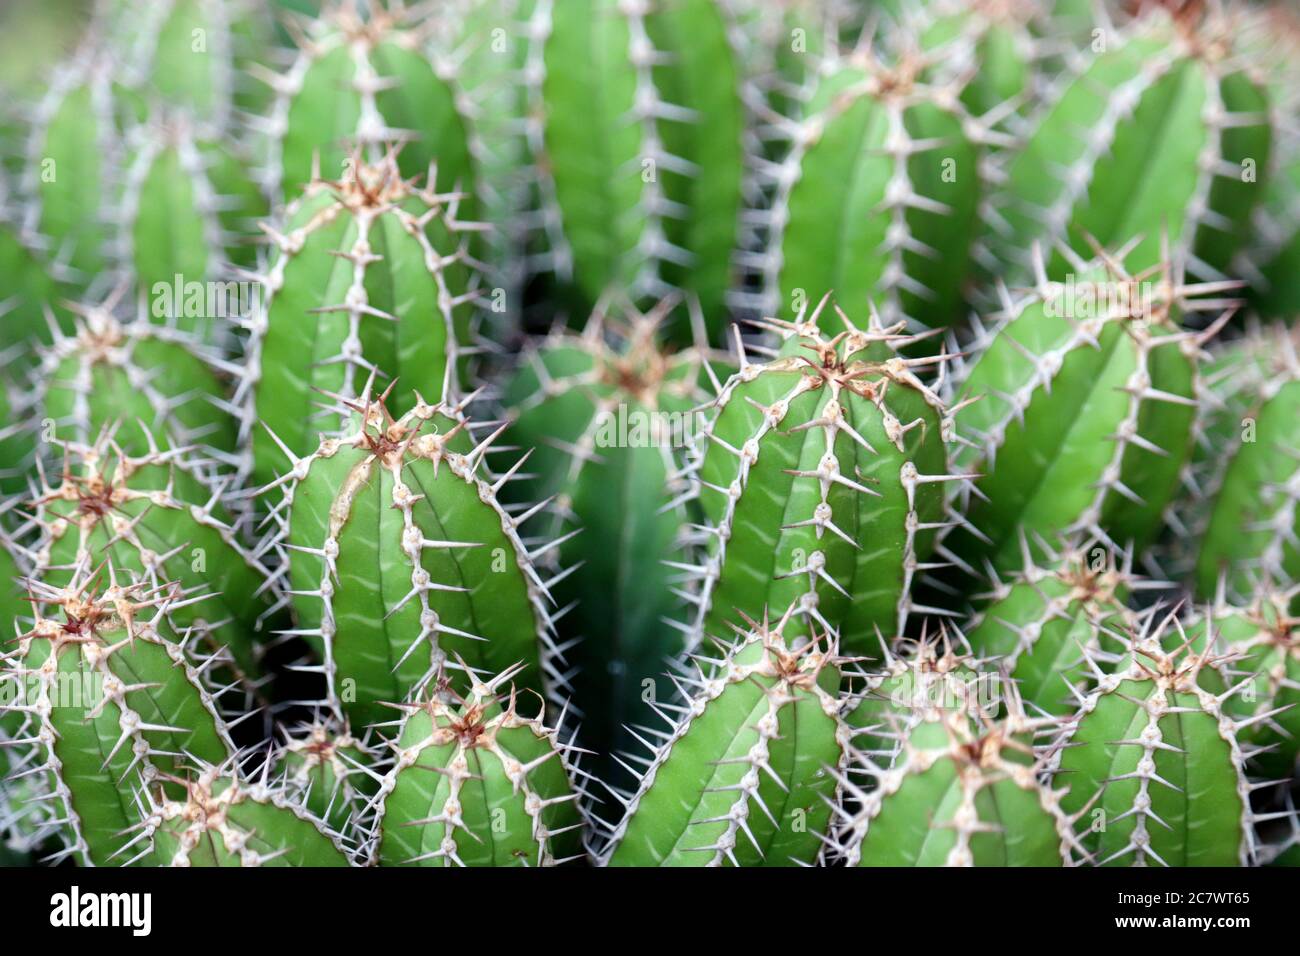 Cactus verdes con agujas grandes. Jardín de cactus, fondo natural Foto de stock